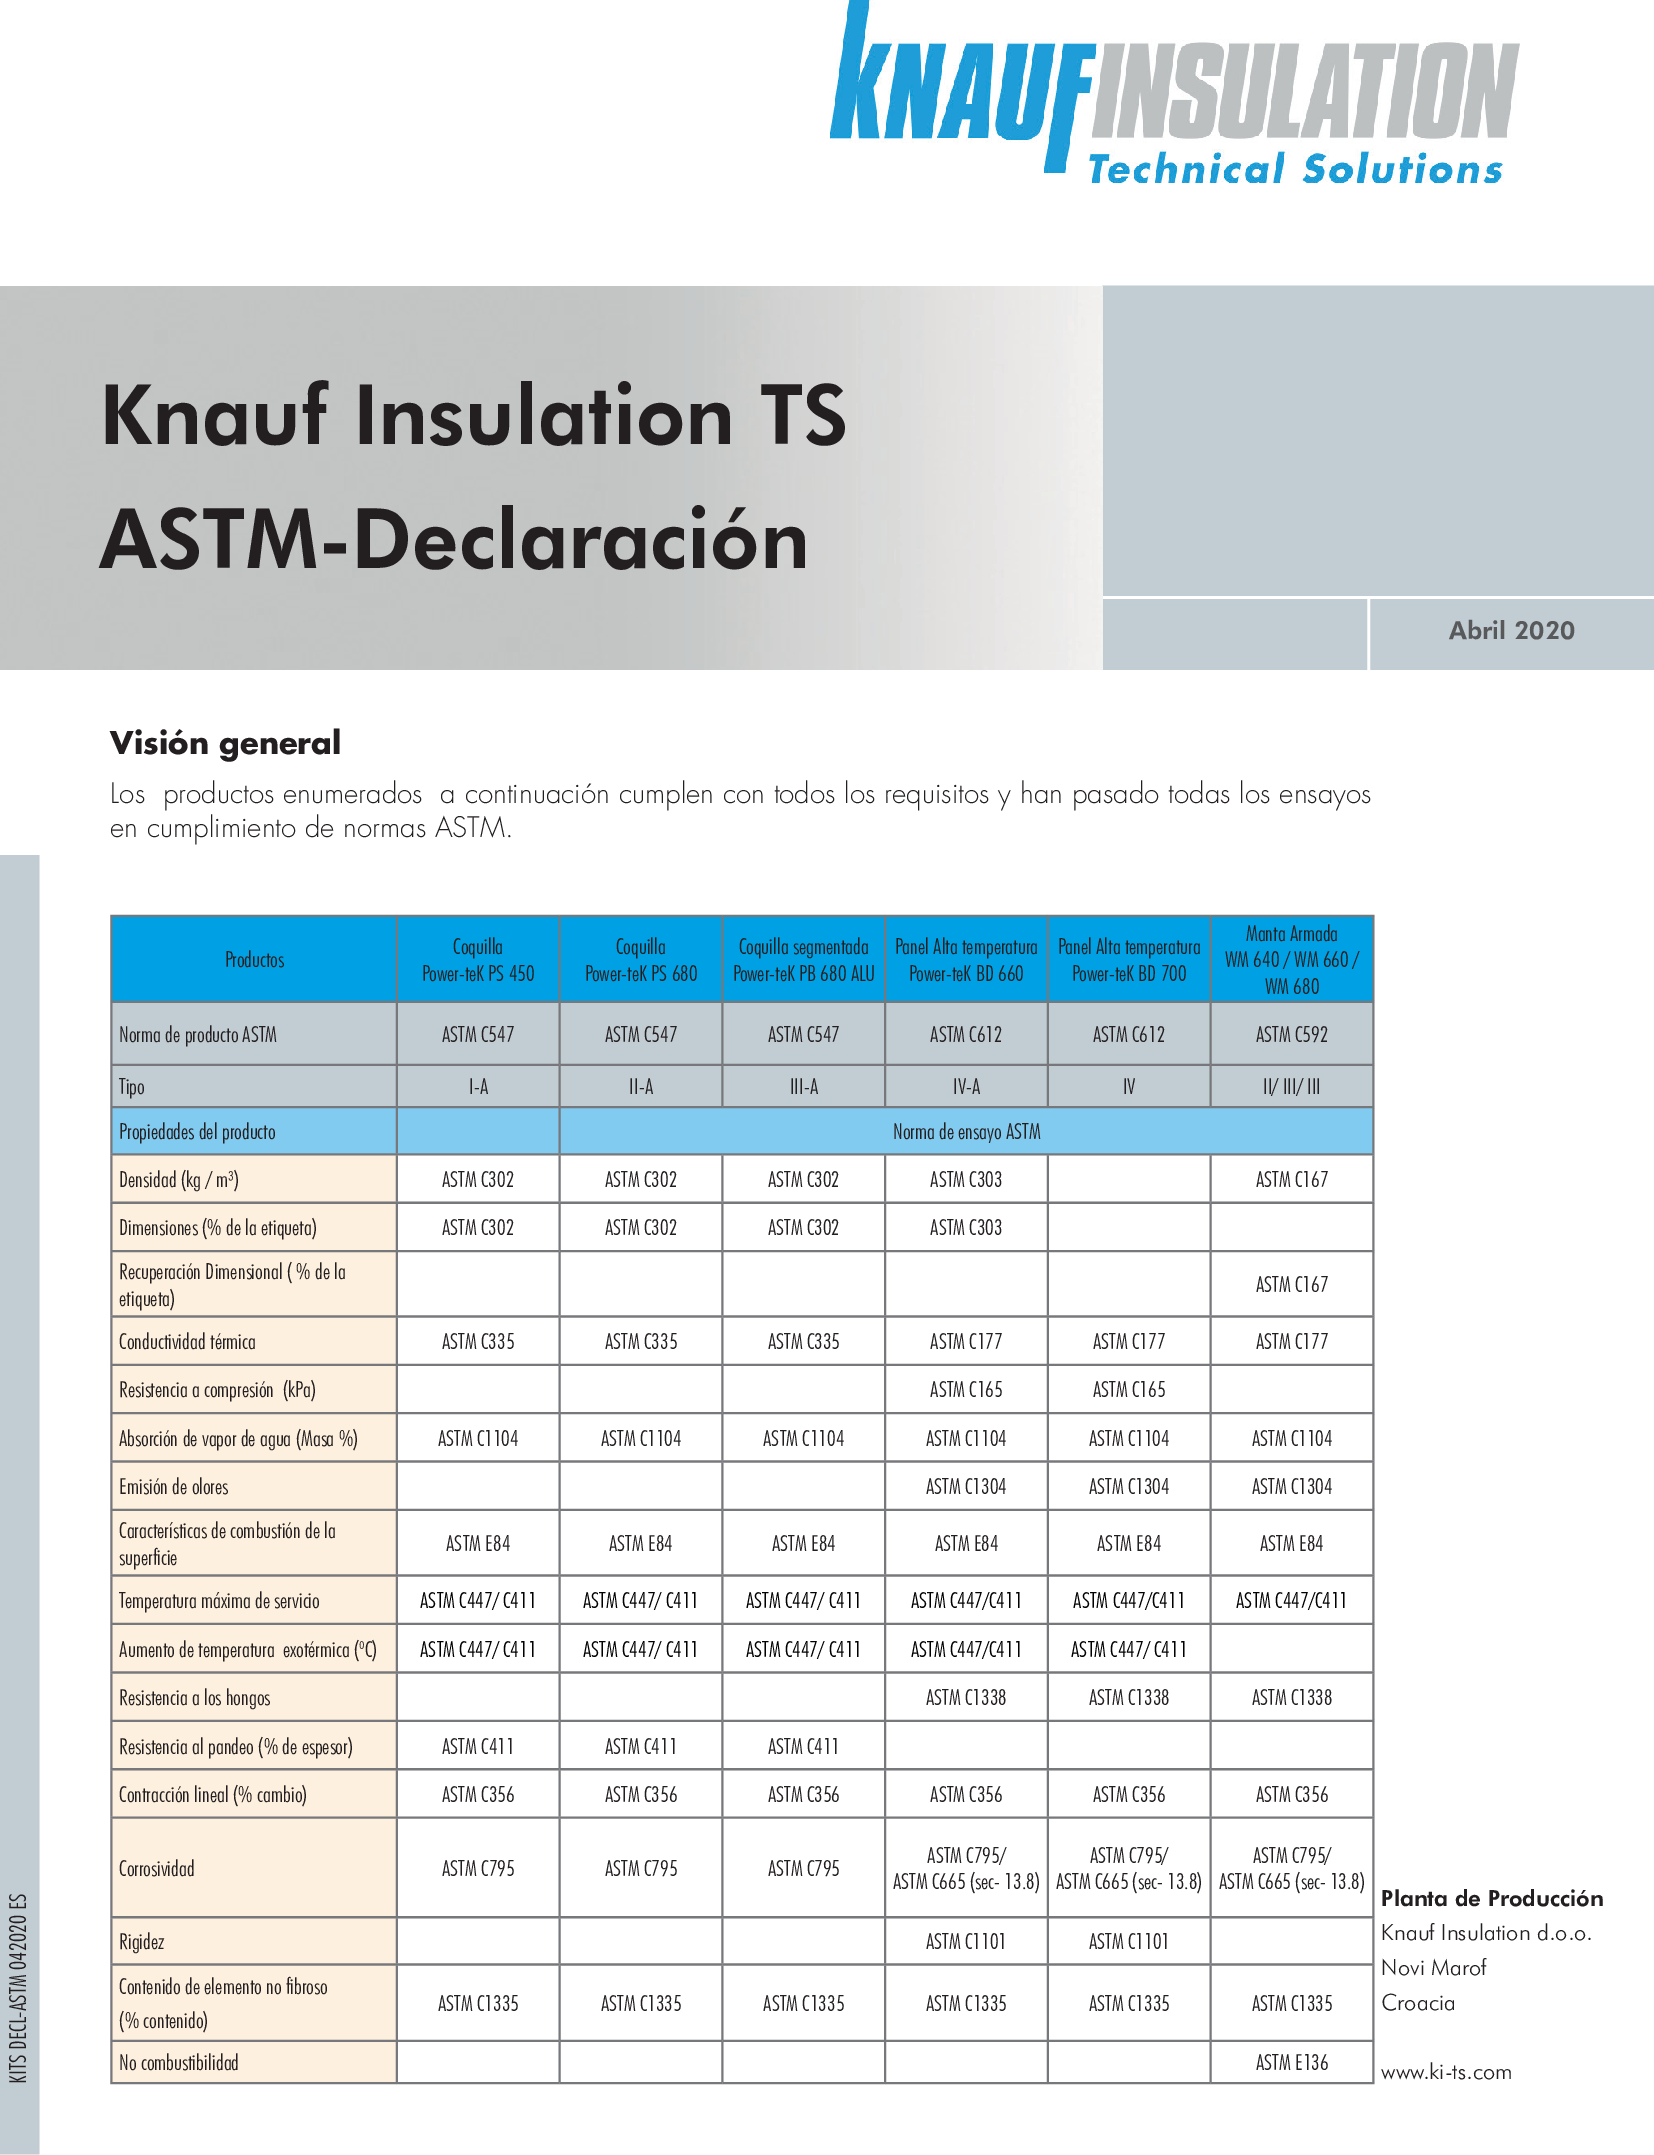 ASTM-Declaración